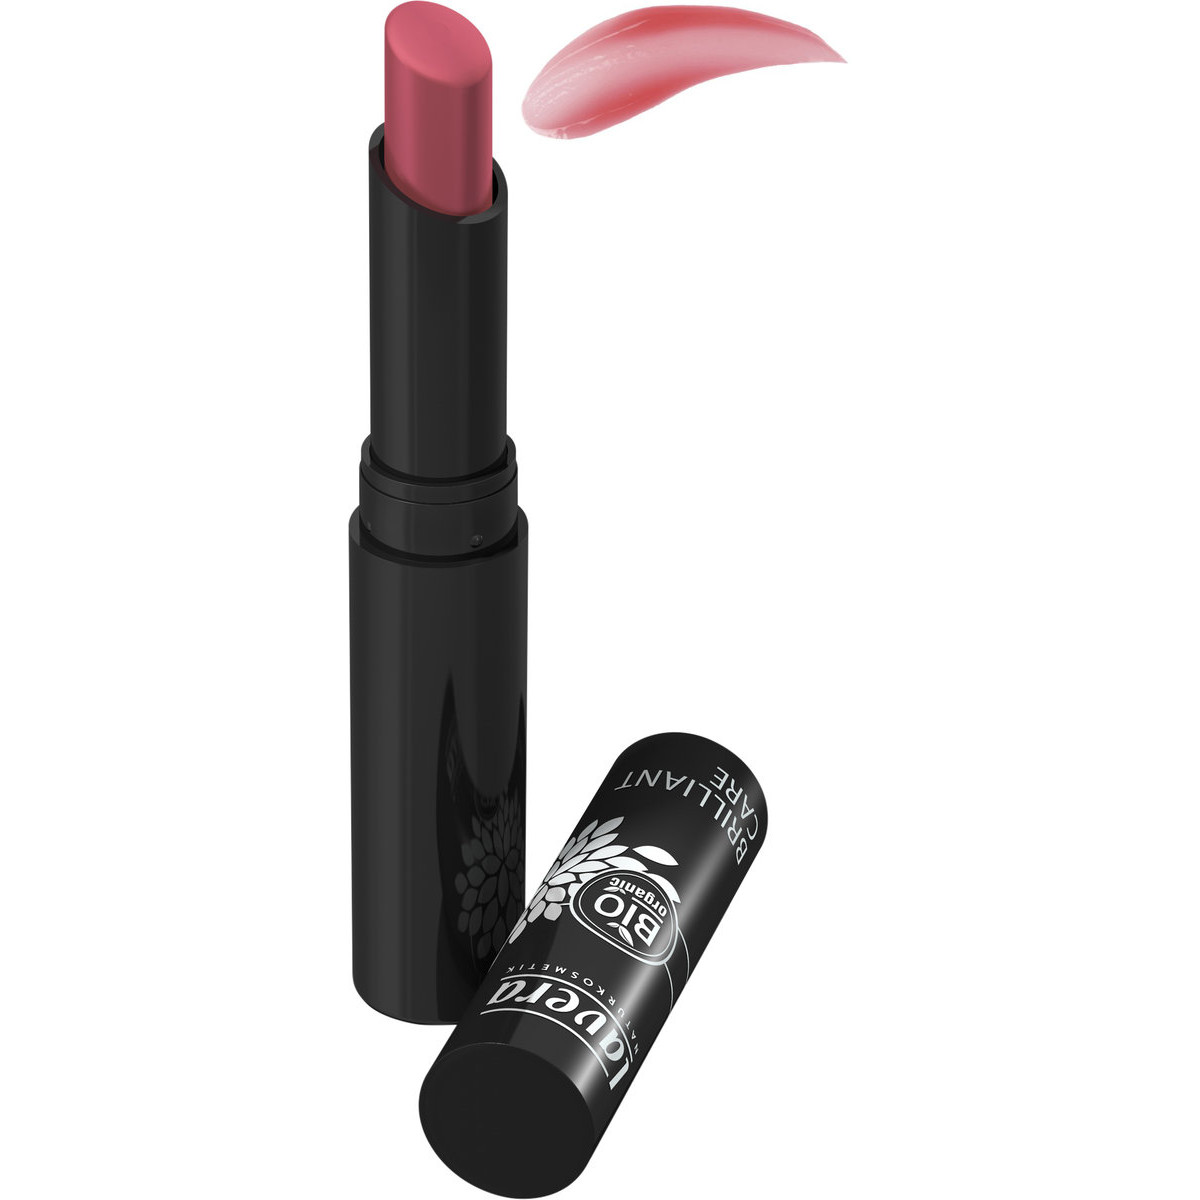 Brilliant Care Lipstick Rose Orientale n°03 - 2,85g- Lavera